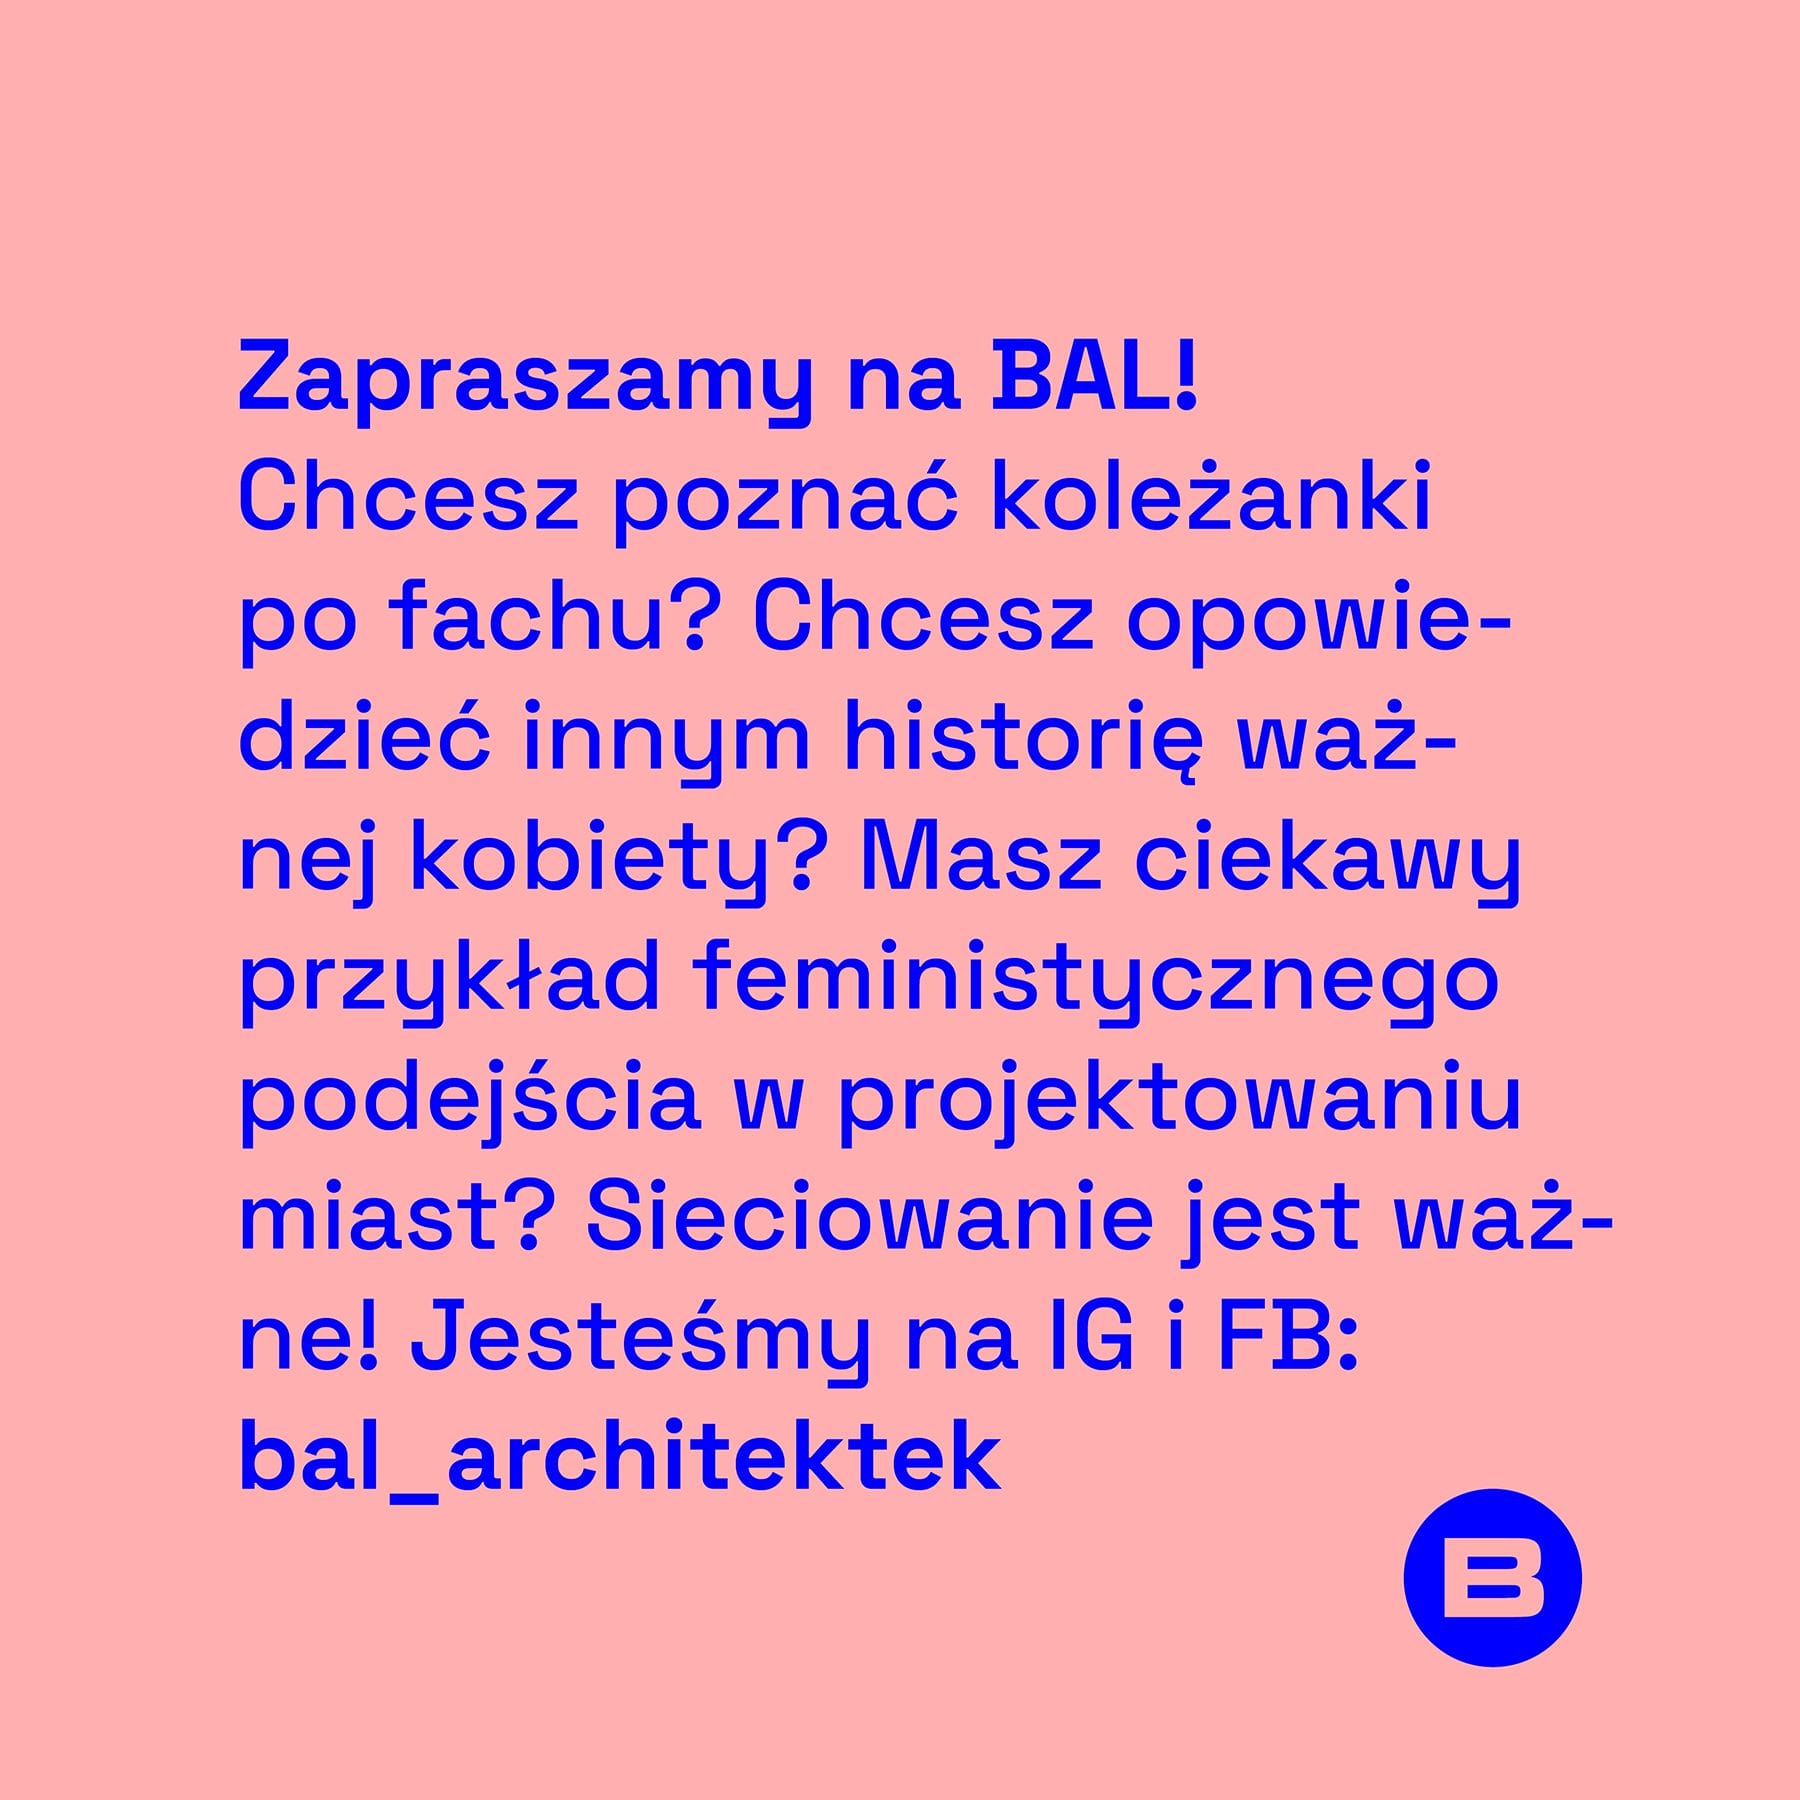 BAL_architektek_designalive-3